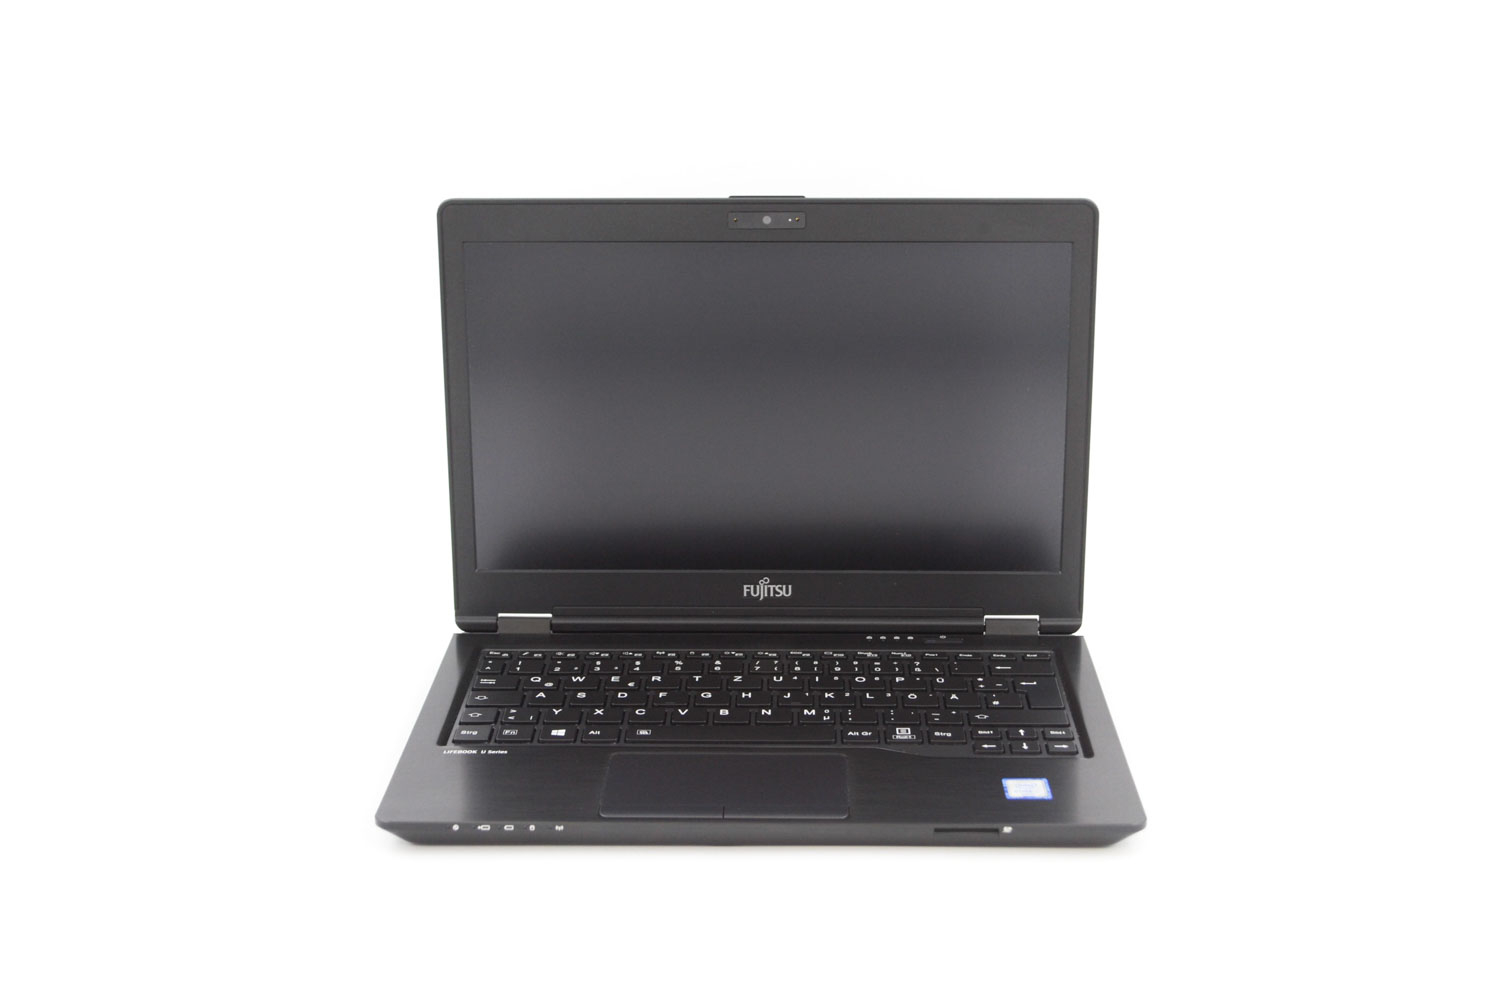 Fujitsu LifeBook U727 i5-6300U 8GB 128GB 12,5" FHD 4G/LTE QWERTZ-DE sehr gut